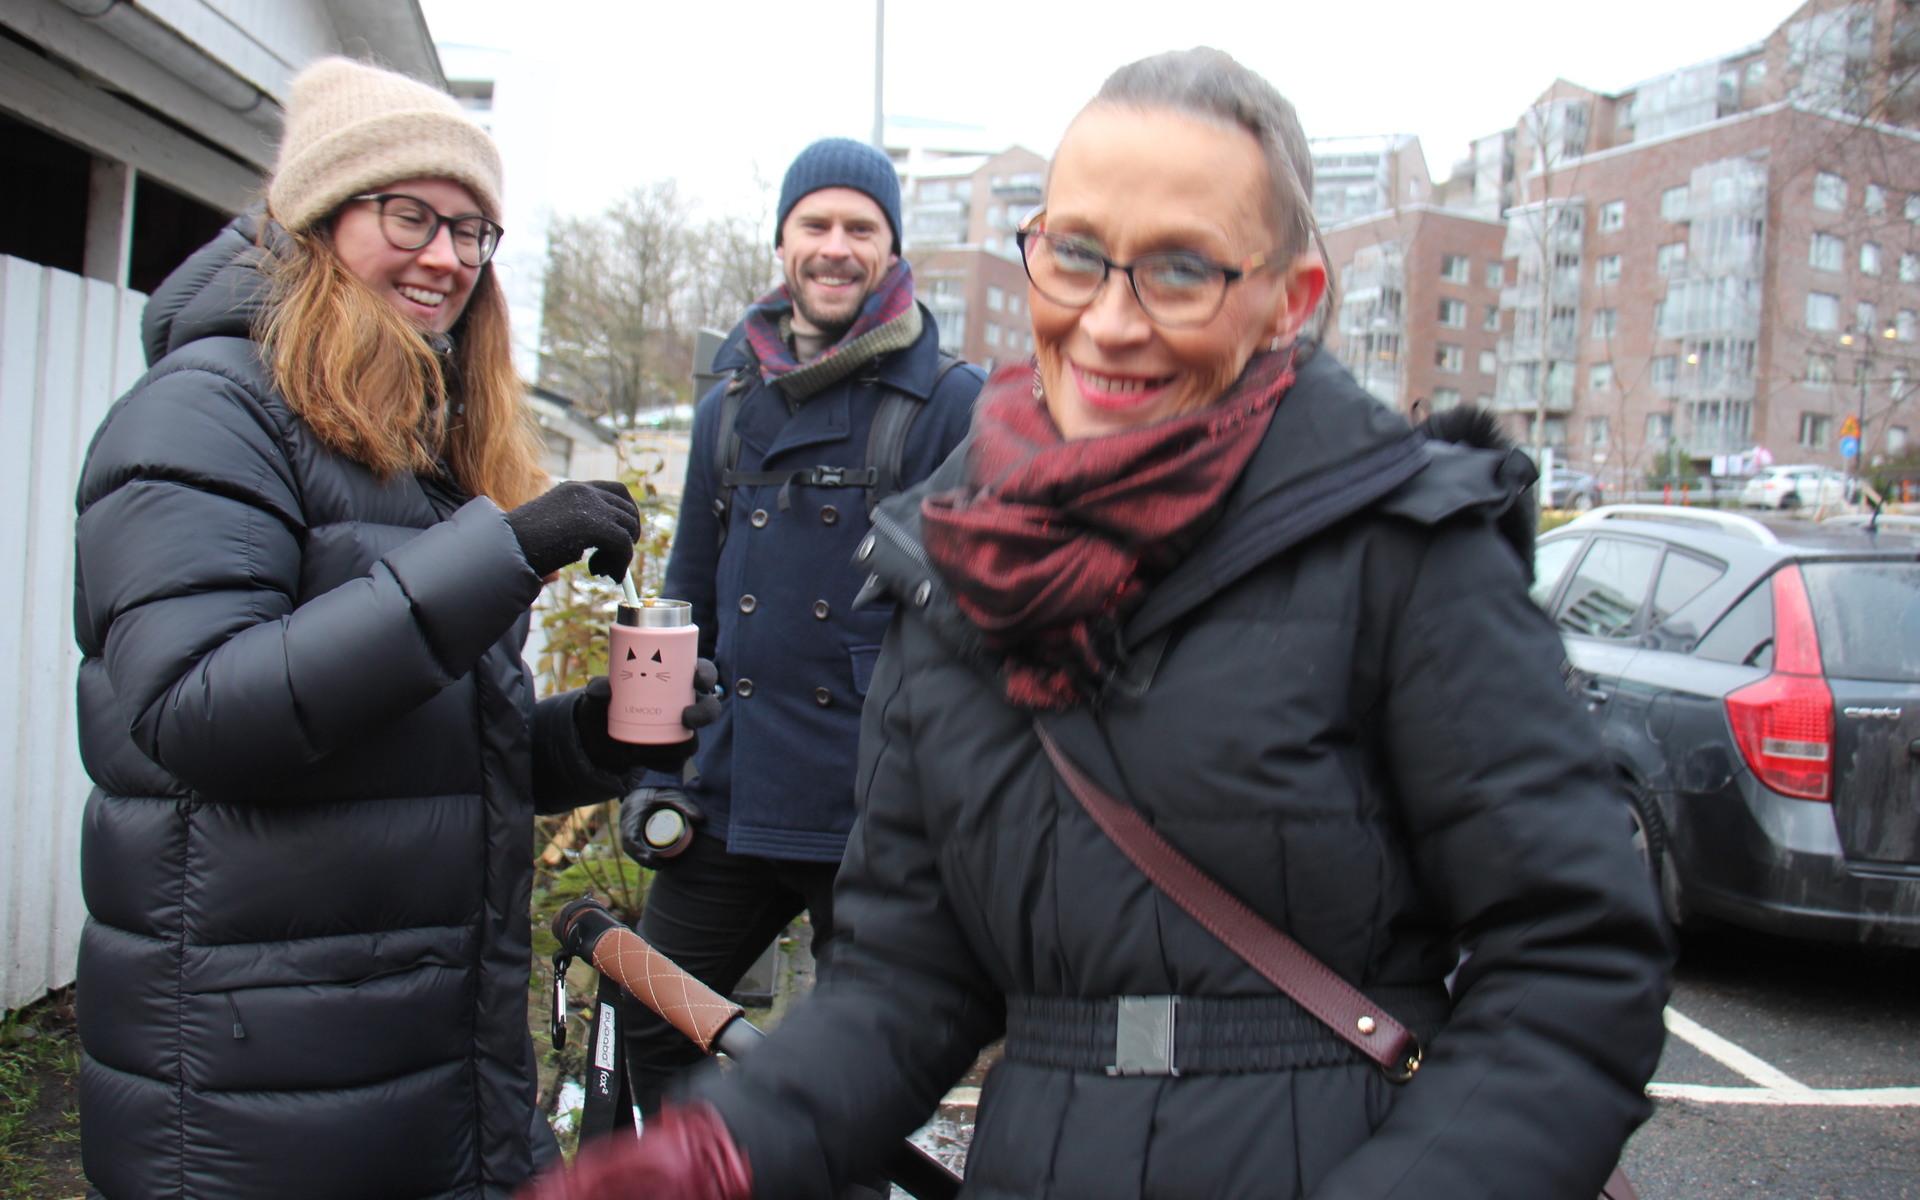 Carina Björck Nygren behövde inte gå många meter från Gustavsgatan till Kvarnbyn. Hon njöt av julkänslan tillsammans med svärdottern Jessica Jonsson, sonen Magnus Nygren och barnbarnet Mella Nygren.